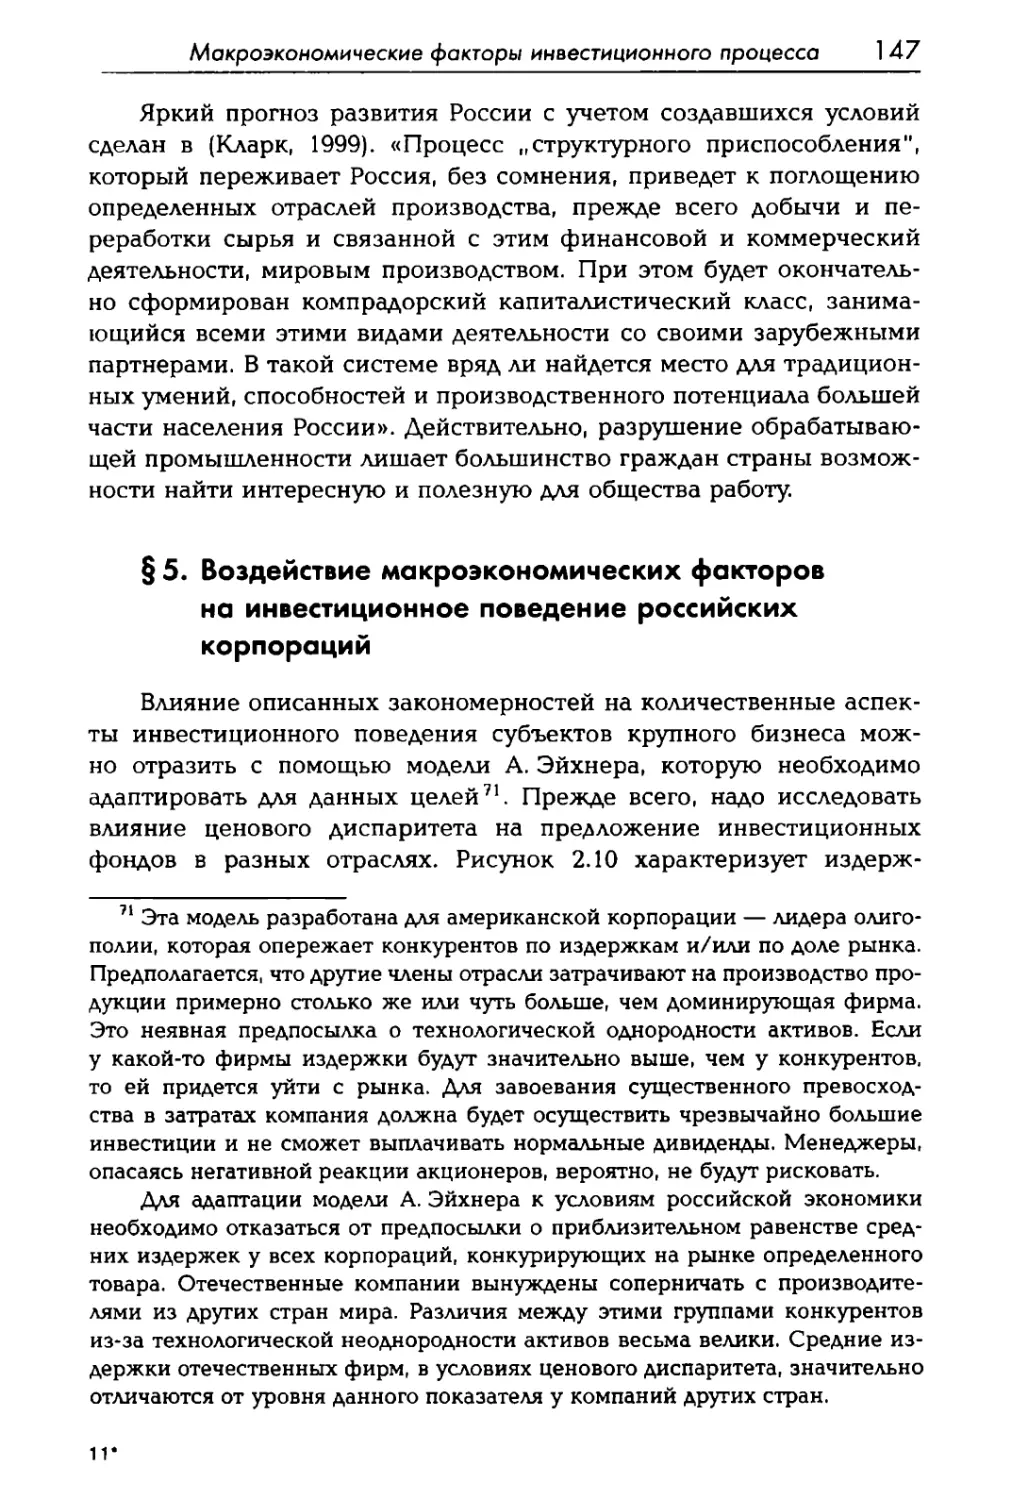 § 5. Воздействие макроэкономических факторов на инвестиционное поведение российских корпораций